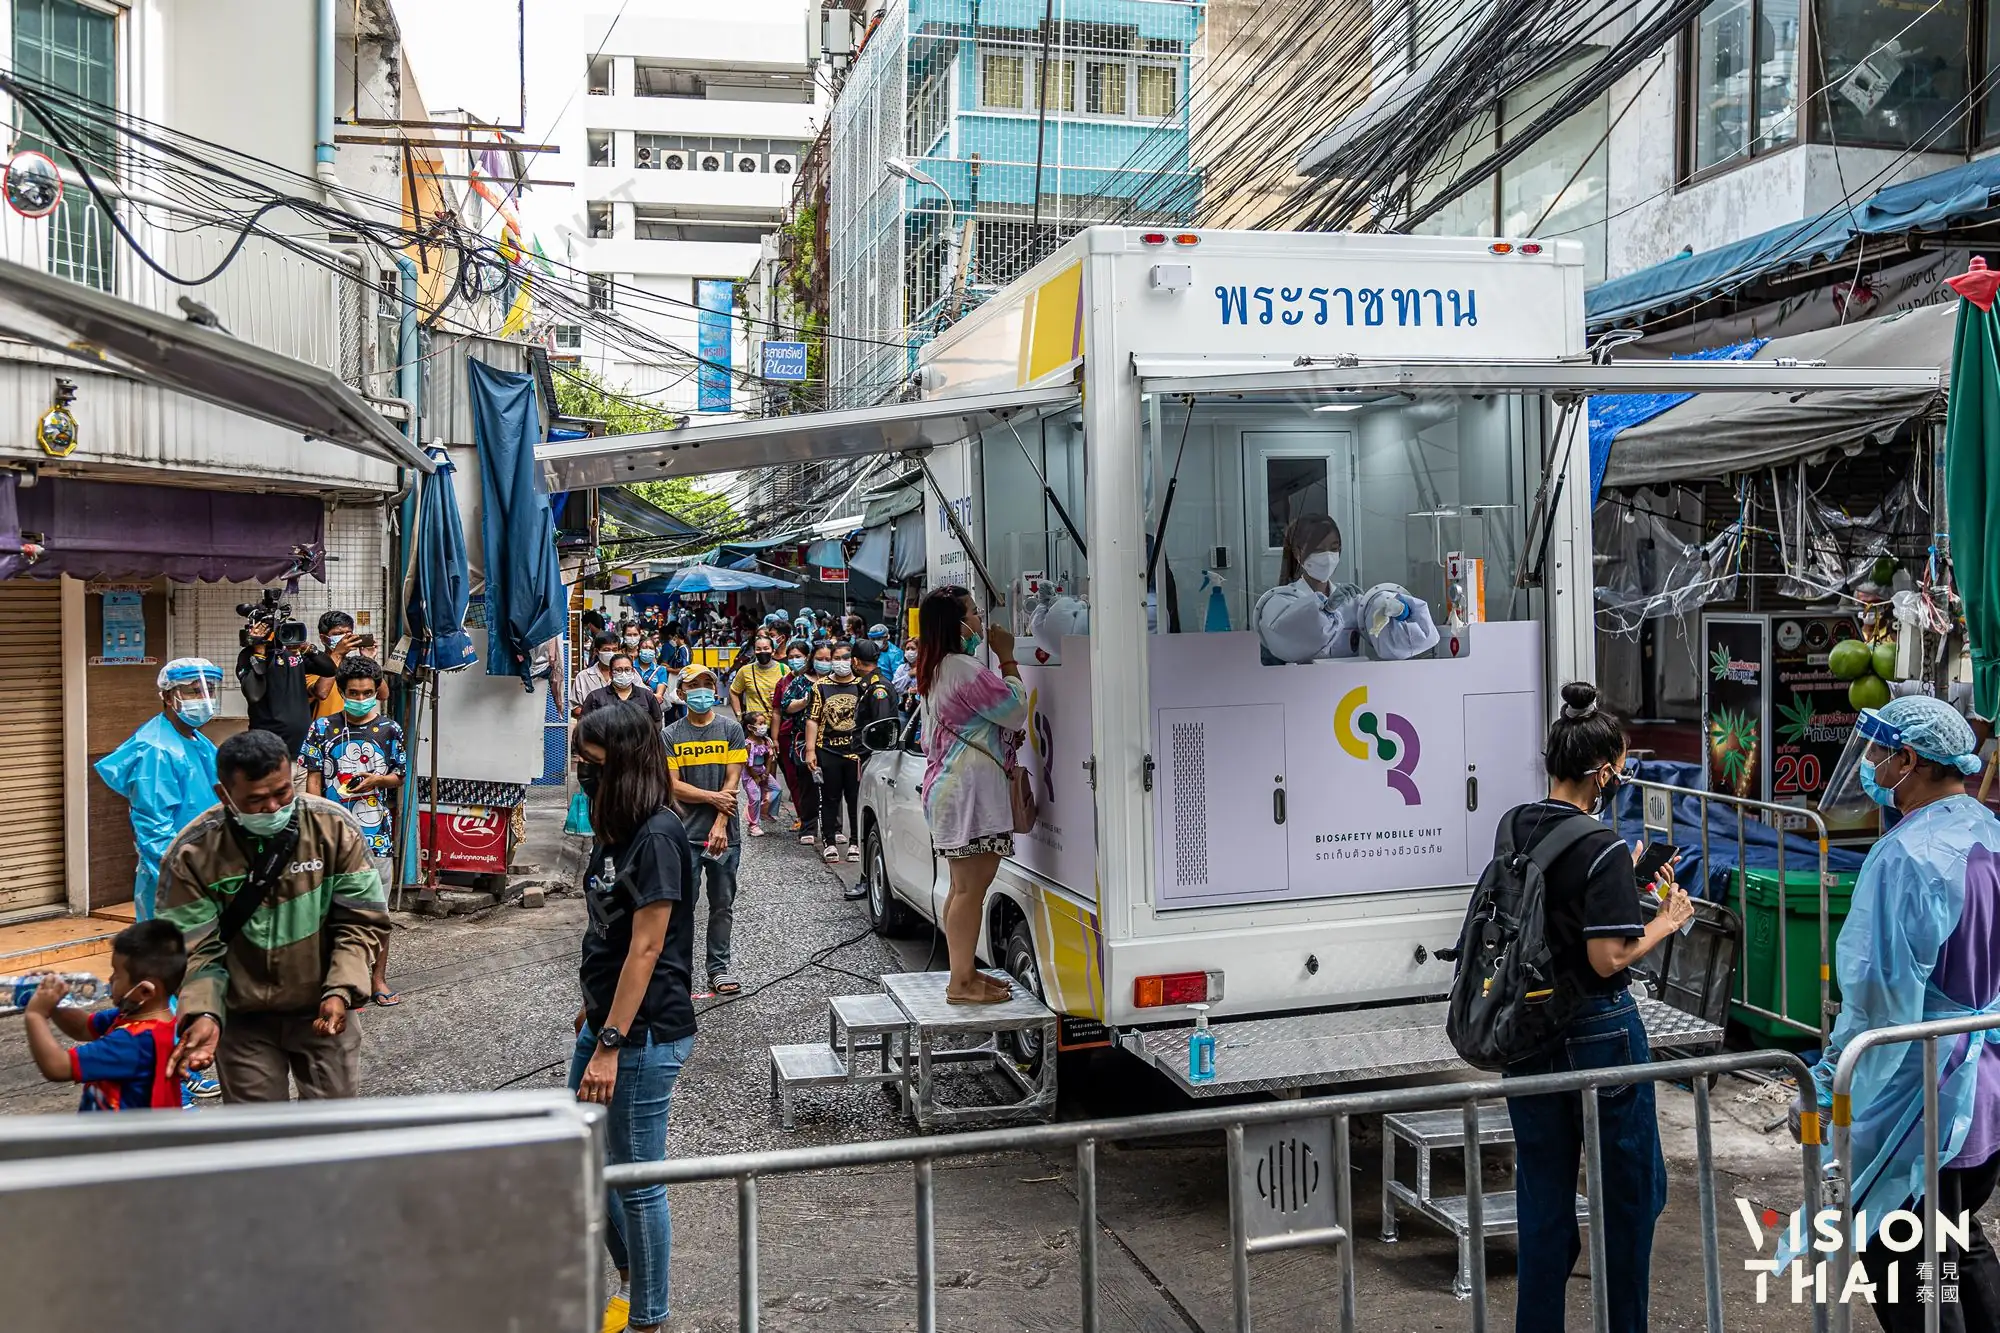 曼谷商圈市场传疫情 今起大规模筛检（图片来源：VISION THAI看见泰国）